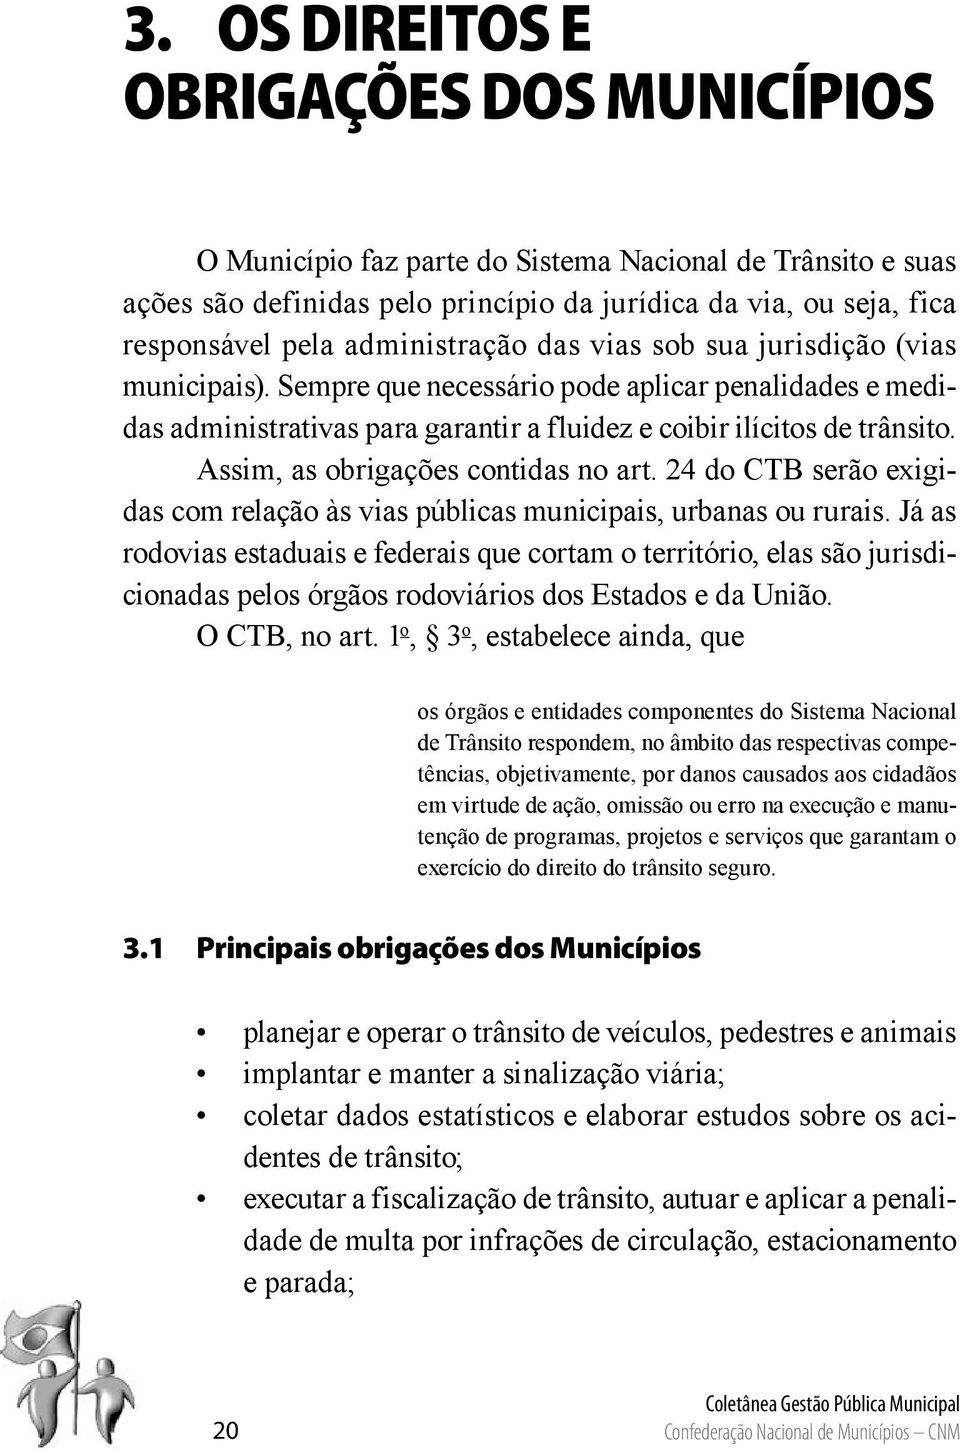 Assim, as obrigações contidas no art. 24 do CTB serão exigidas com relação às vias públicas municipais, urbanas ou rurais.